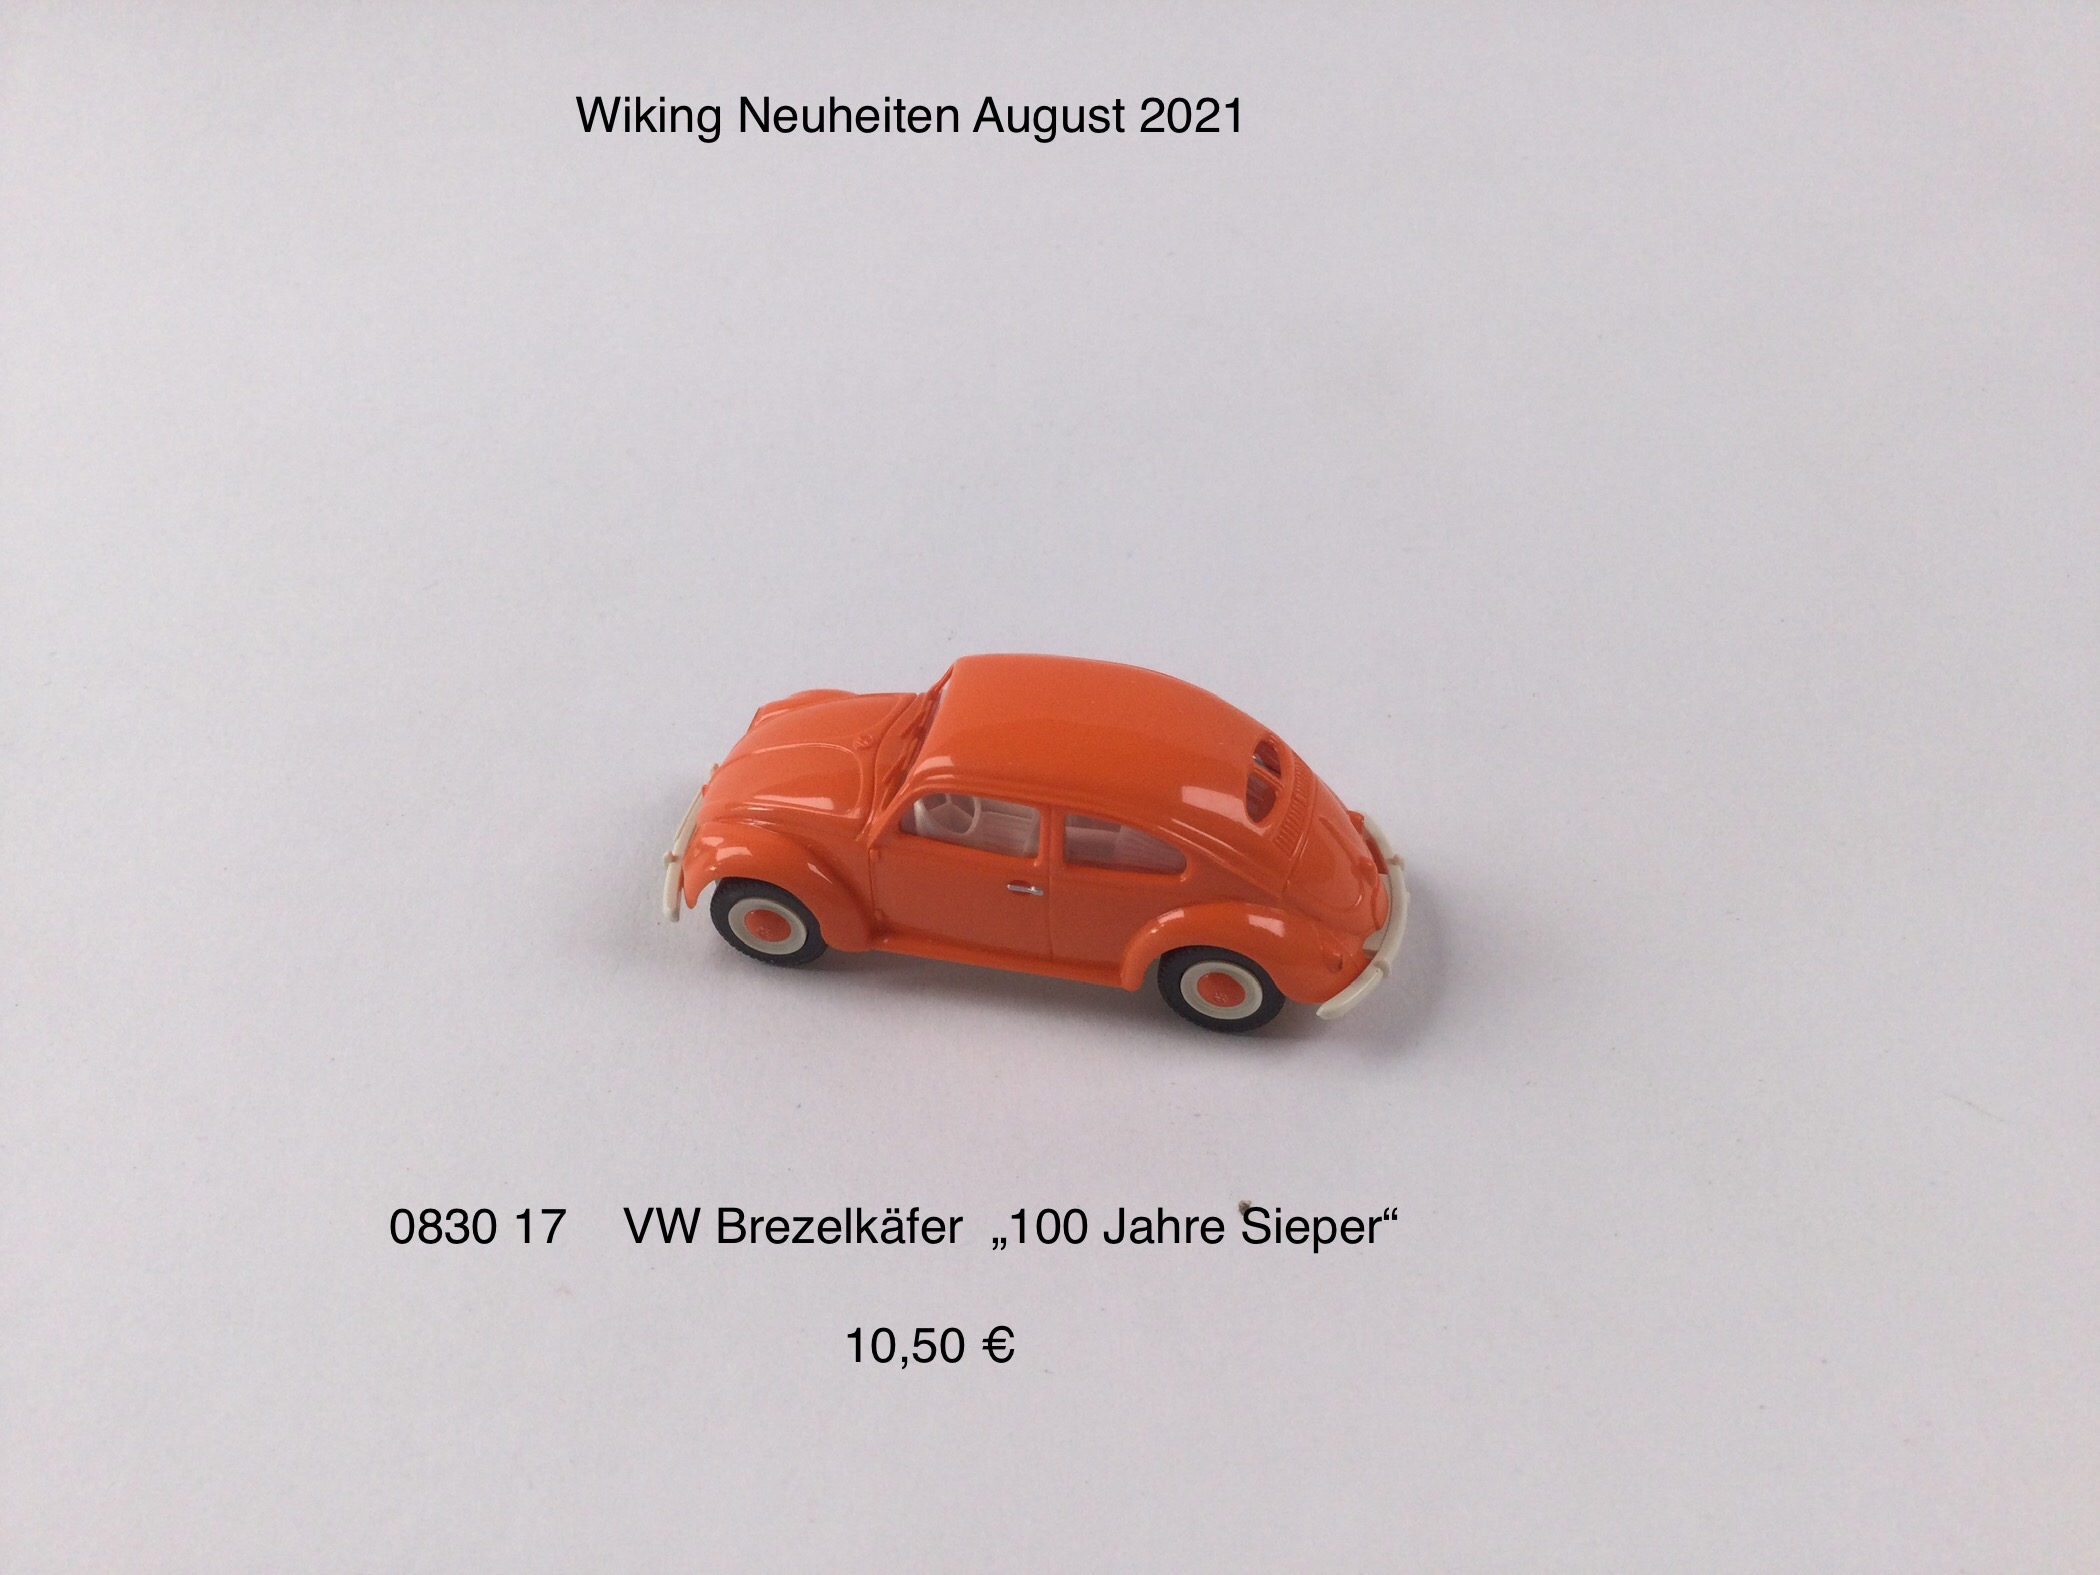 VW Brezelkäfer, 100 Jahre Sieper